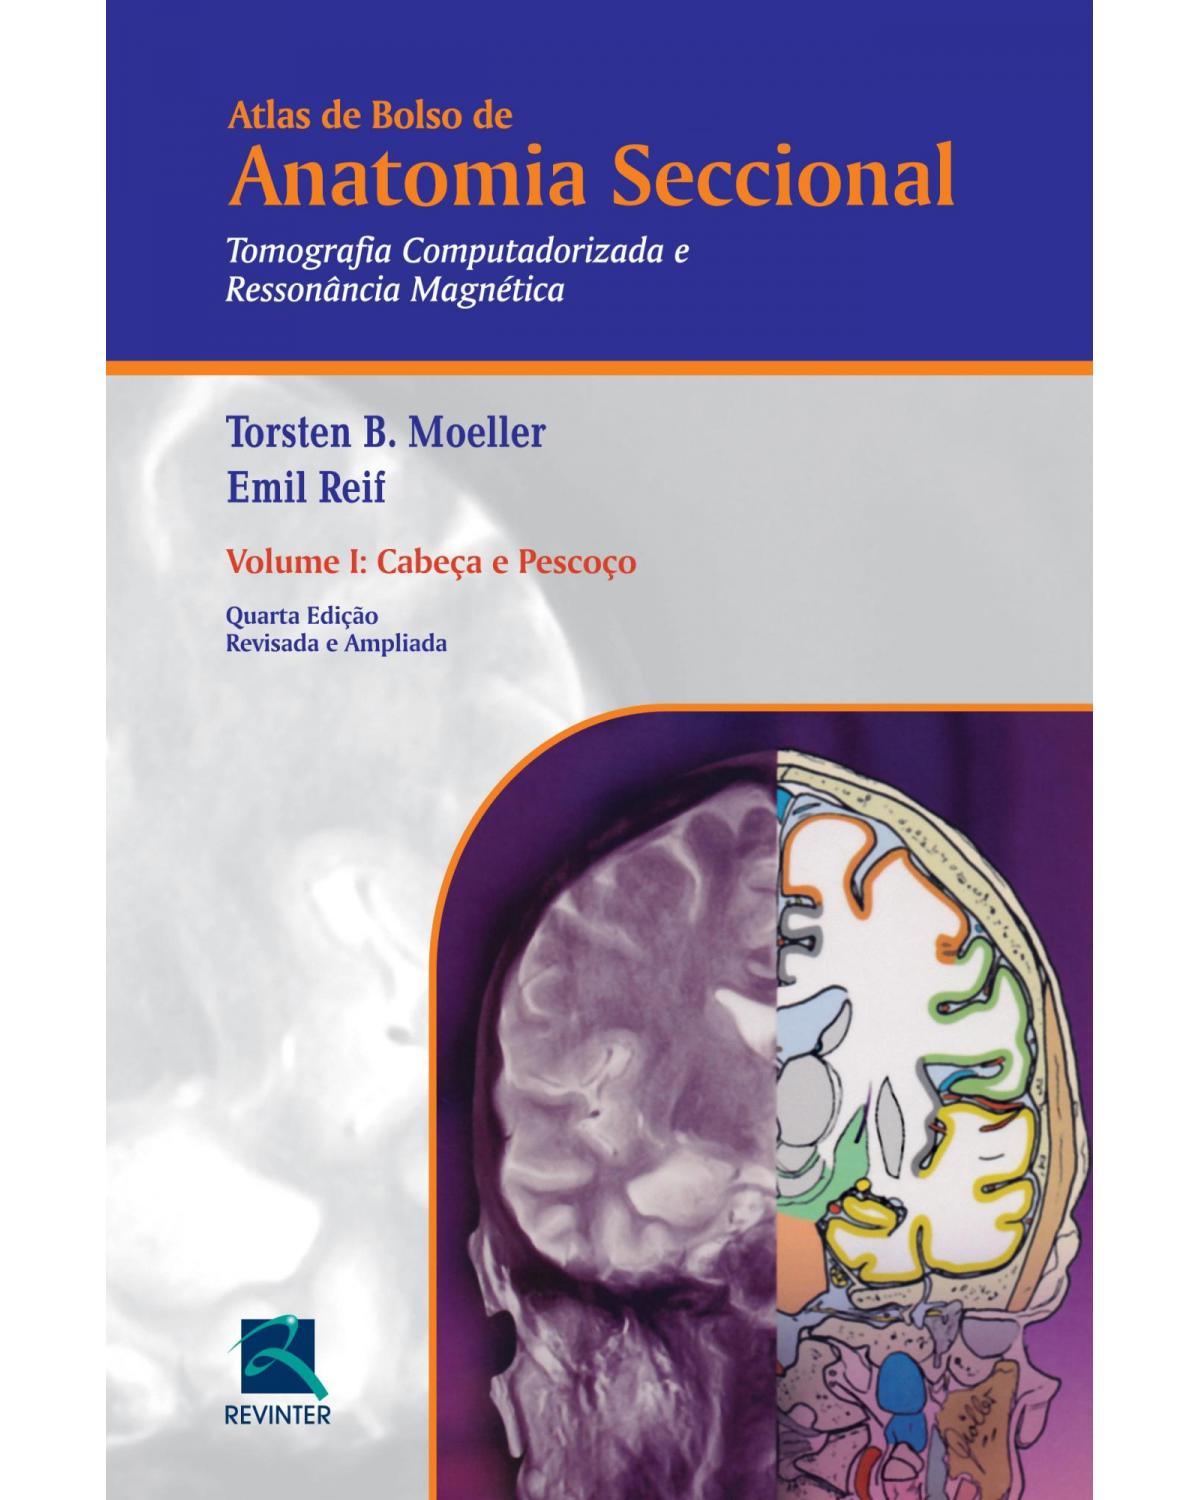 Atlas de bolso de anatomia seccional - Volume 1: tomografia computadorizada e ressonância magnética - Cabeça e pescoço - 4ª Edição | 2016